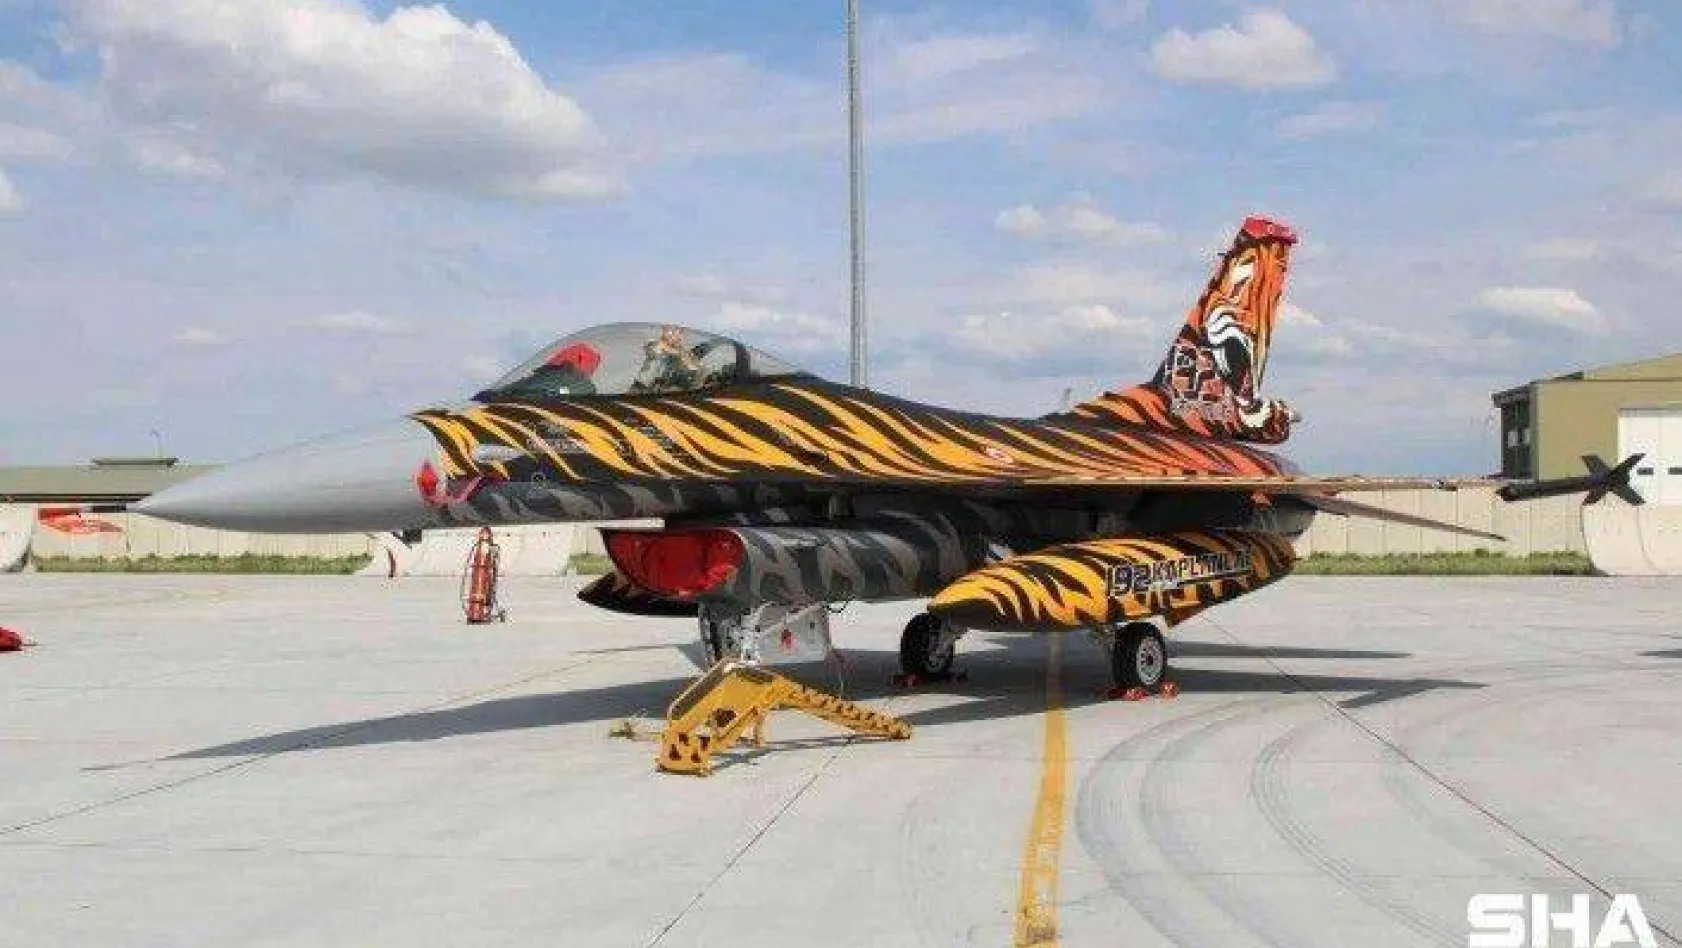 Türk F-16'ları Yunanistan'a gidiyor